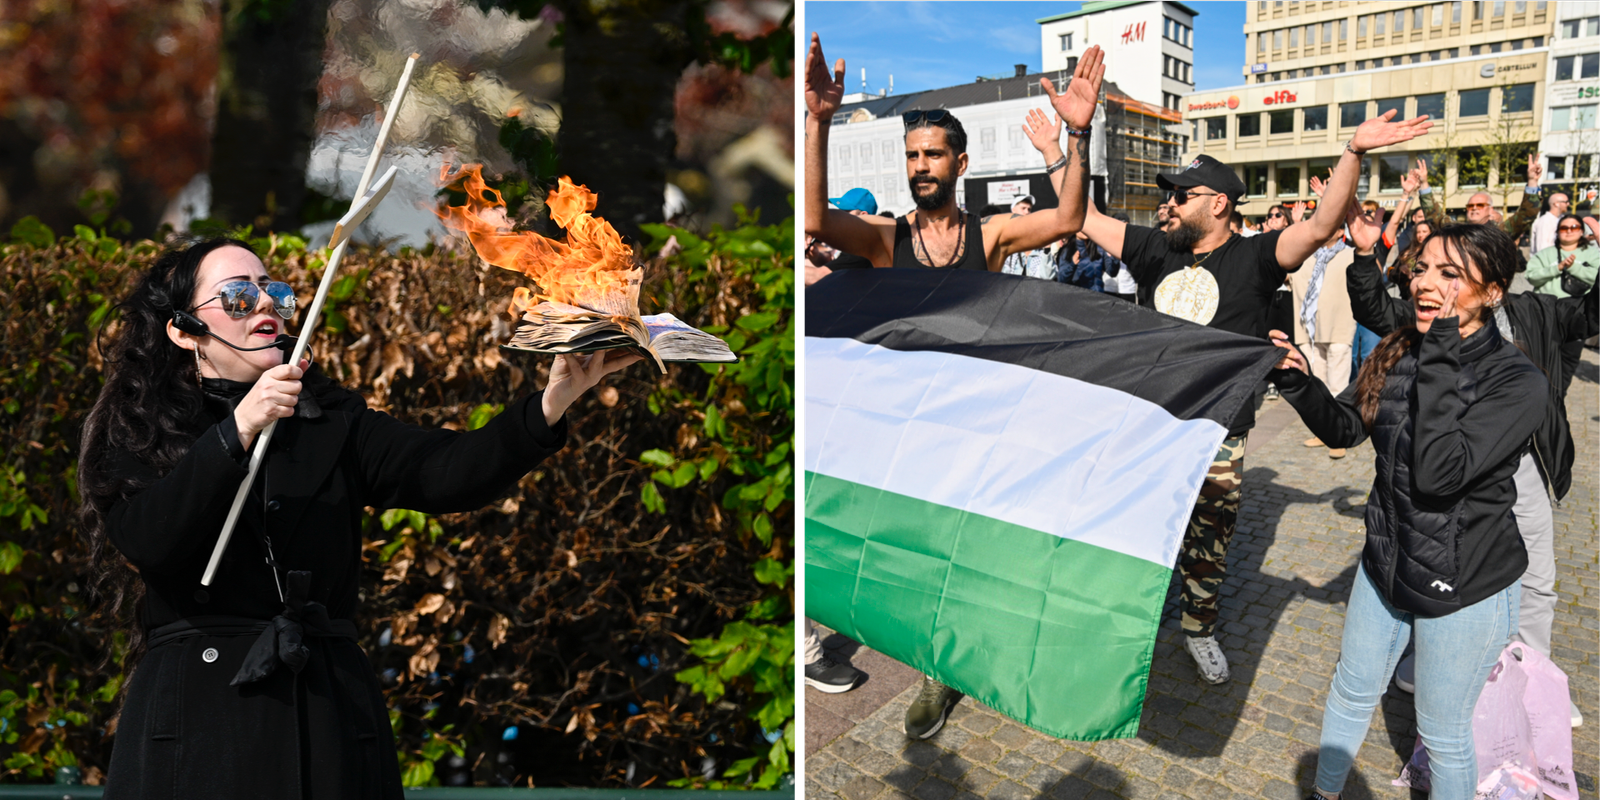 brände koran och trampade på palestinaflagga – möts med sång och dans